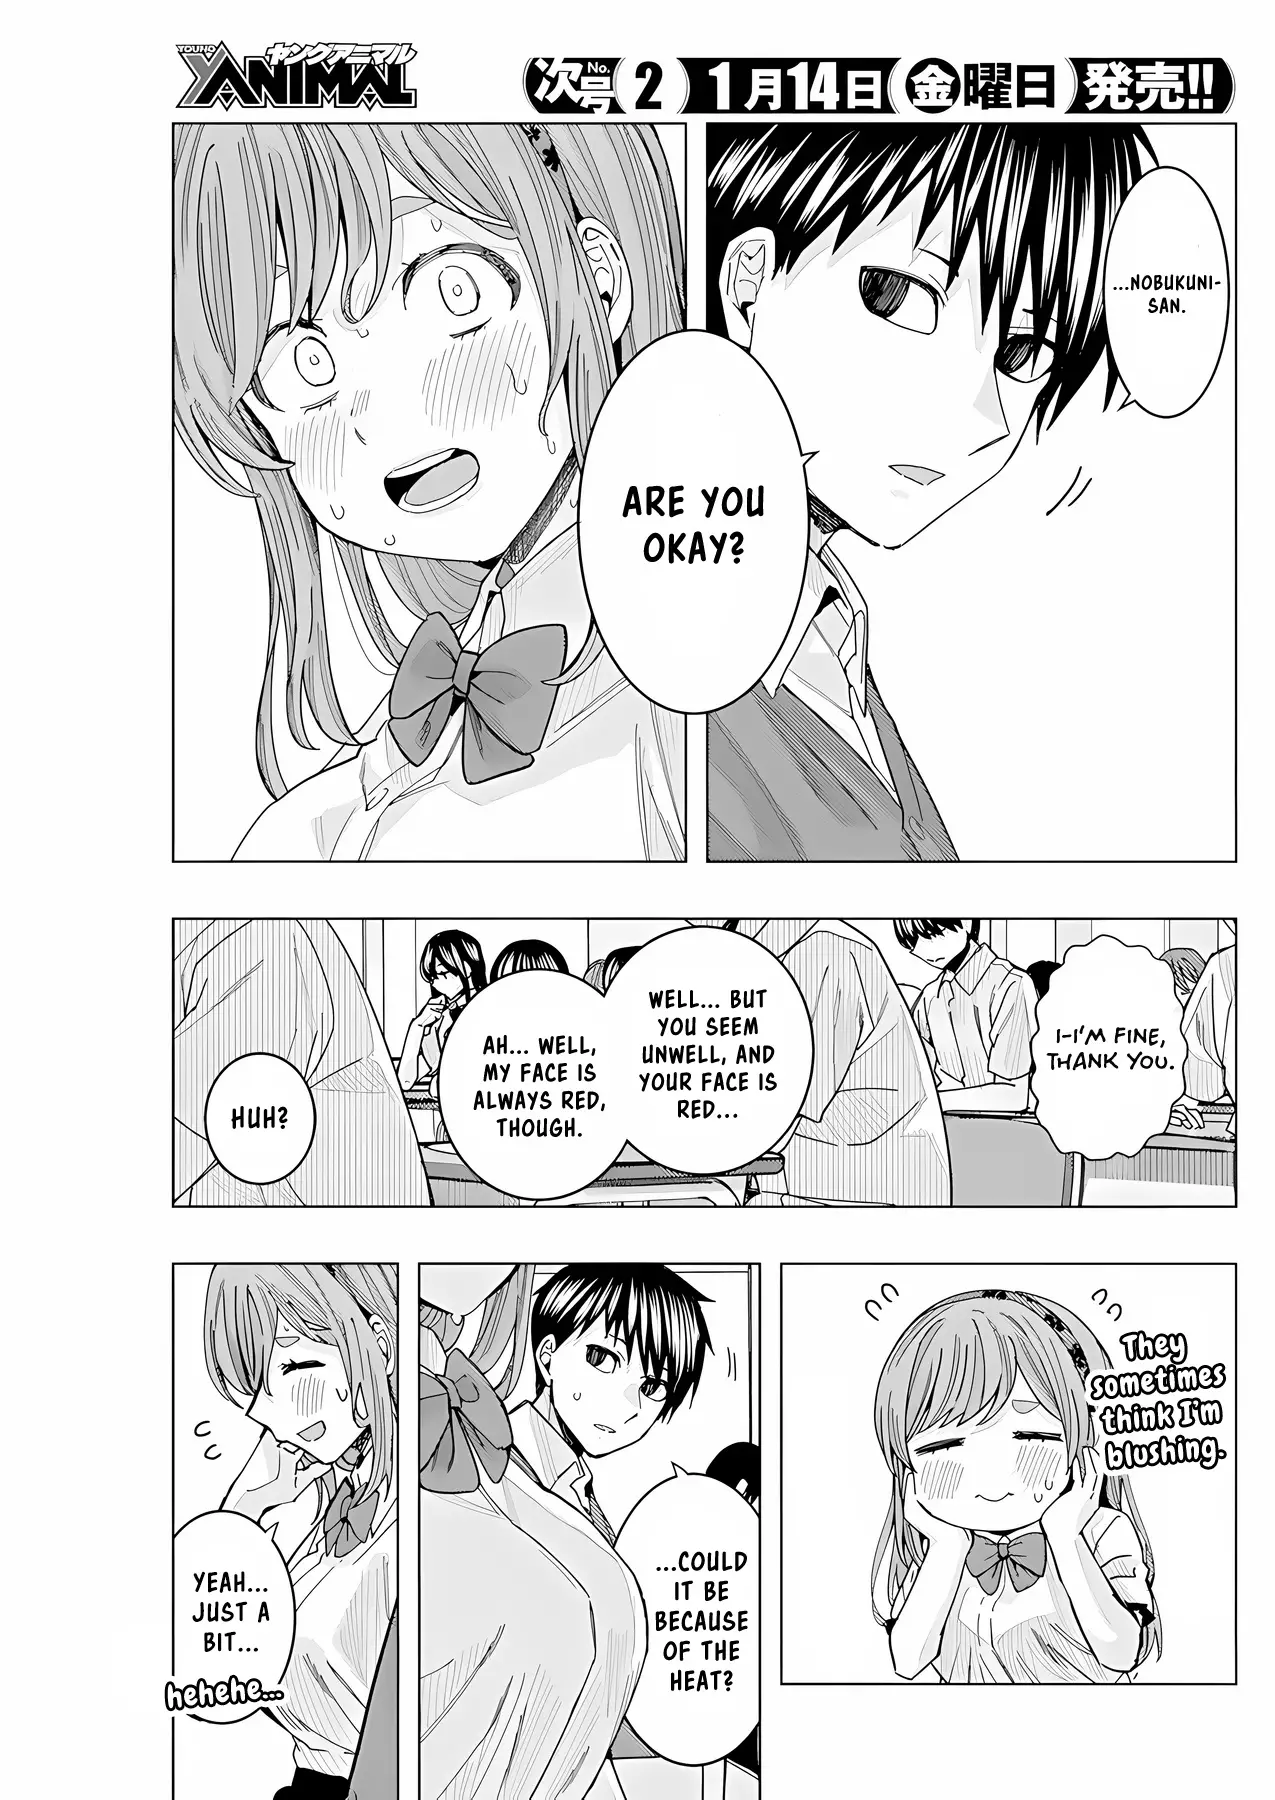 "nobukuni-San" Does She Like Me? - 26 page 6-7a55941d